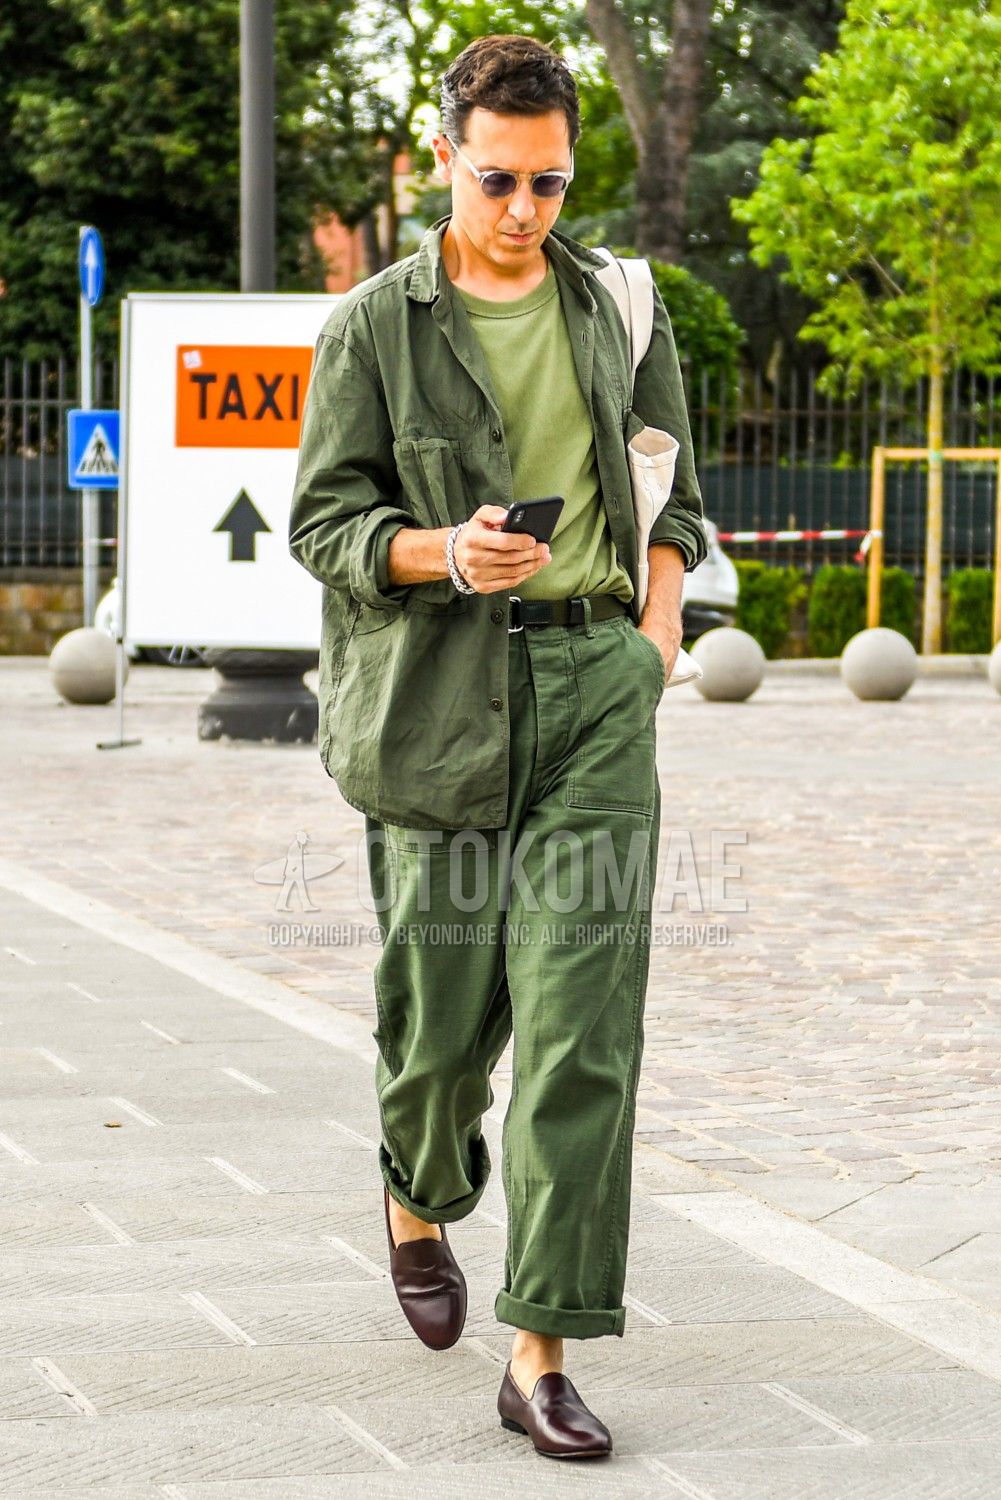 緑tシャツ コーデ特集 定番カラーとは一味違ったメンズの着こなし おすすめアイテムを紹介 メンズファッションメディア Otokomae 男前研究所